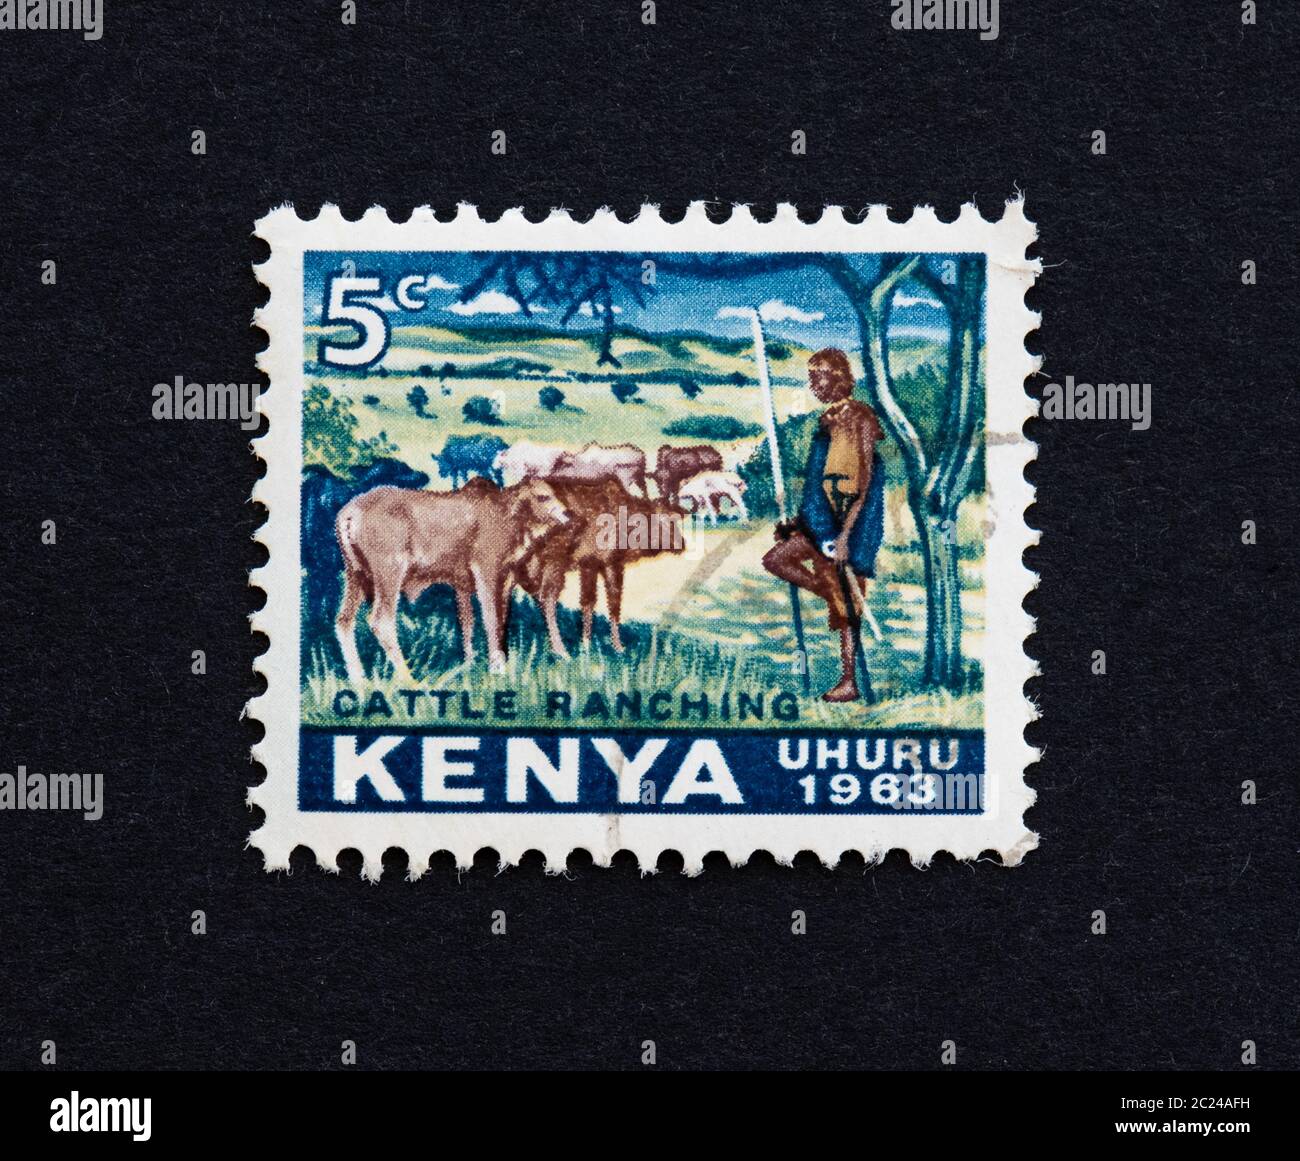 Timbre d'indépendance du Kenya (uhuru) montrant l'élevage de bétail 1963 Banque D'Images